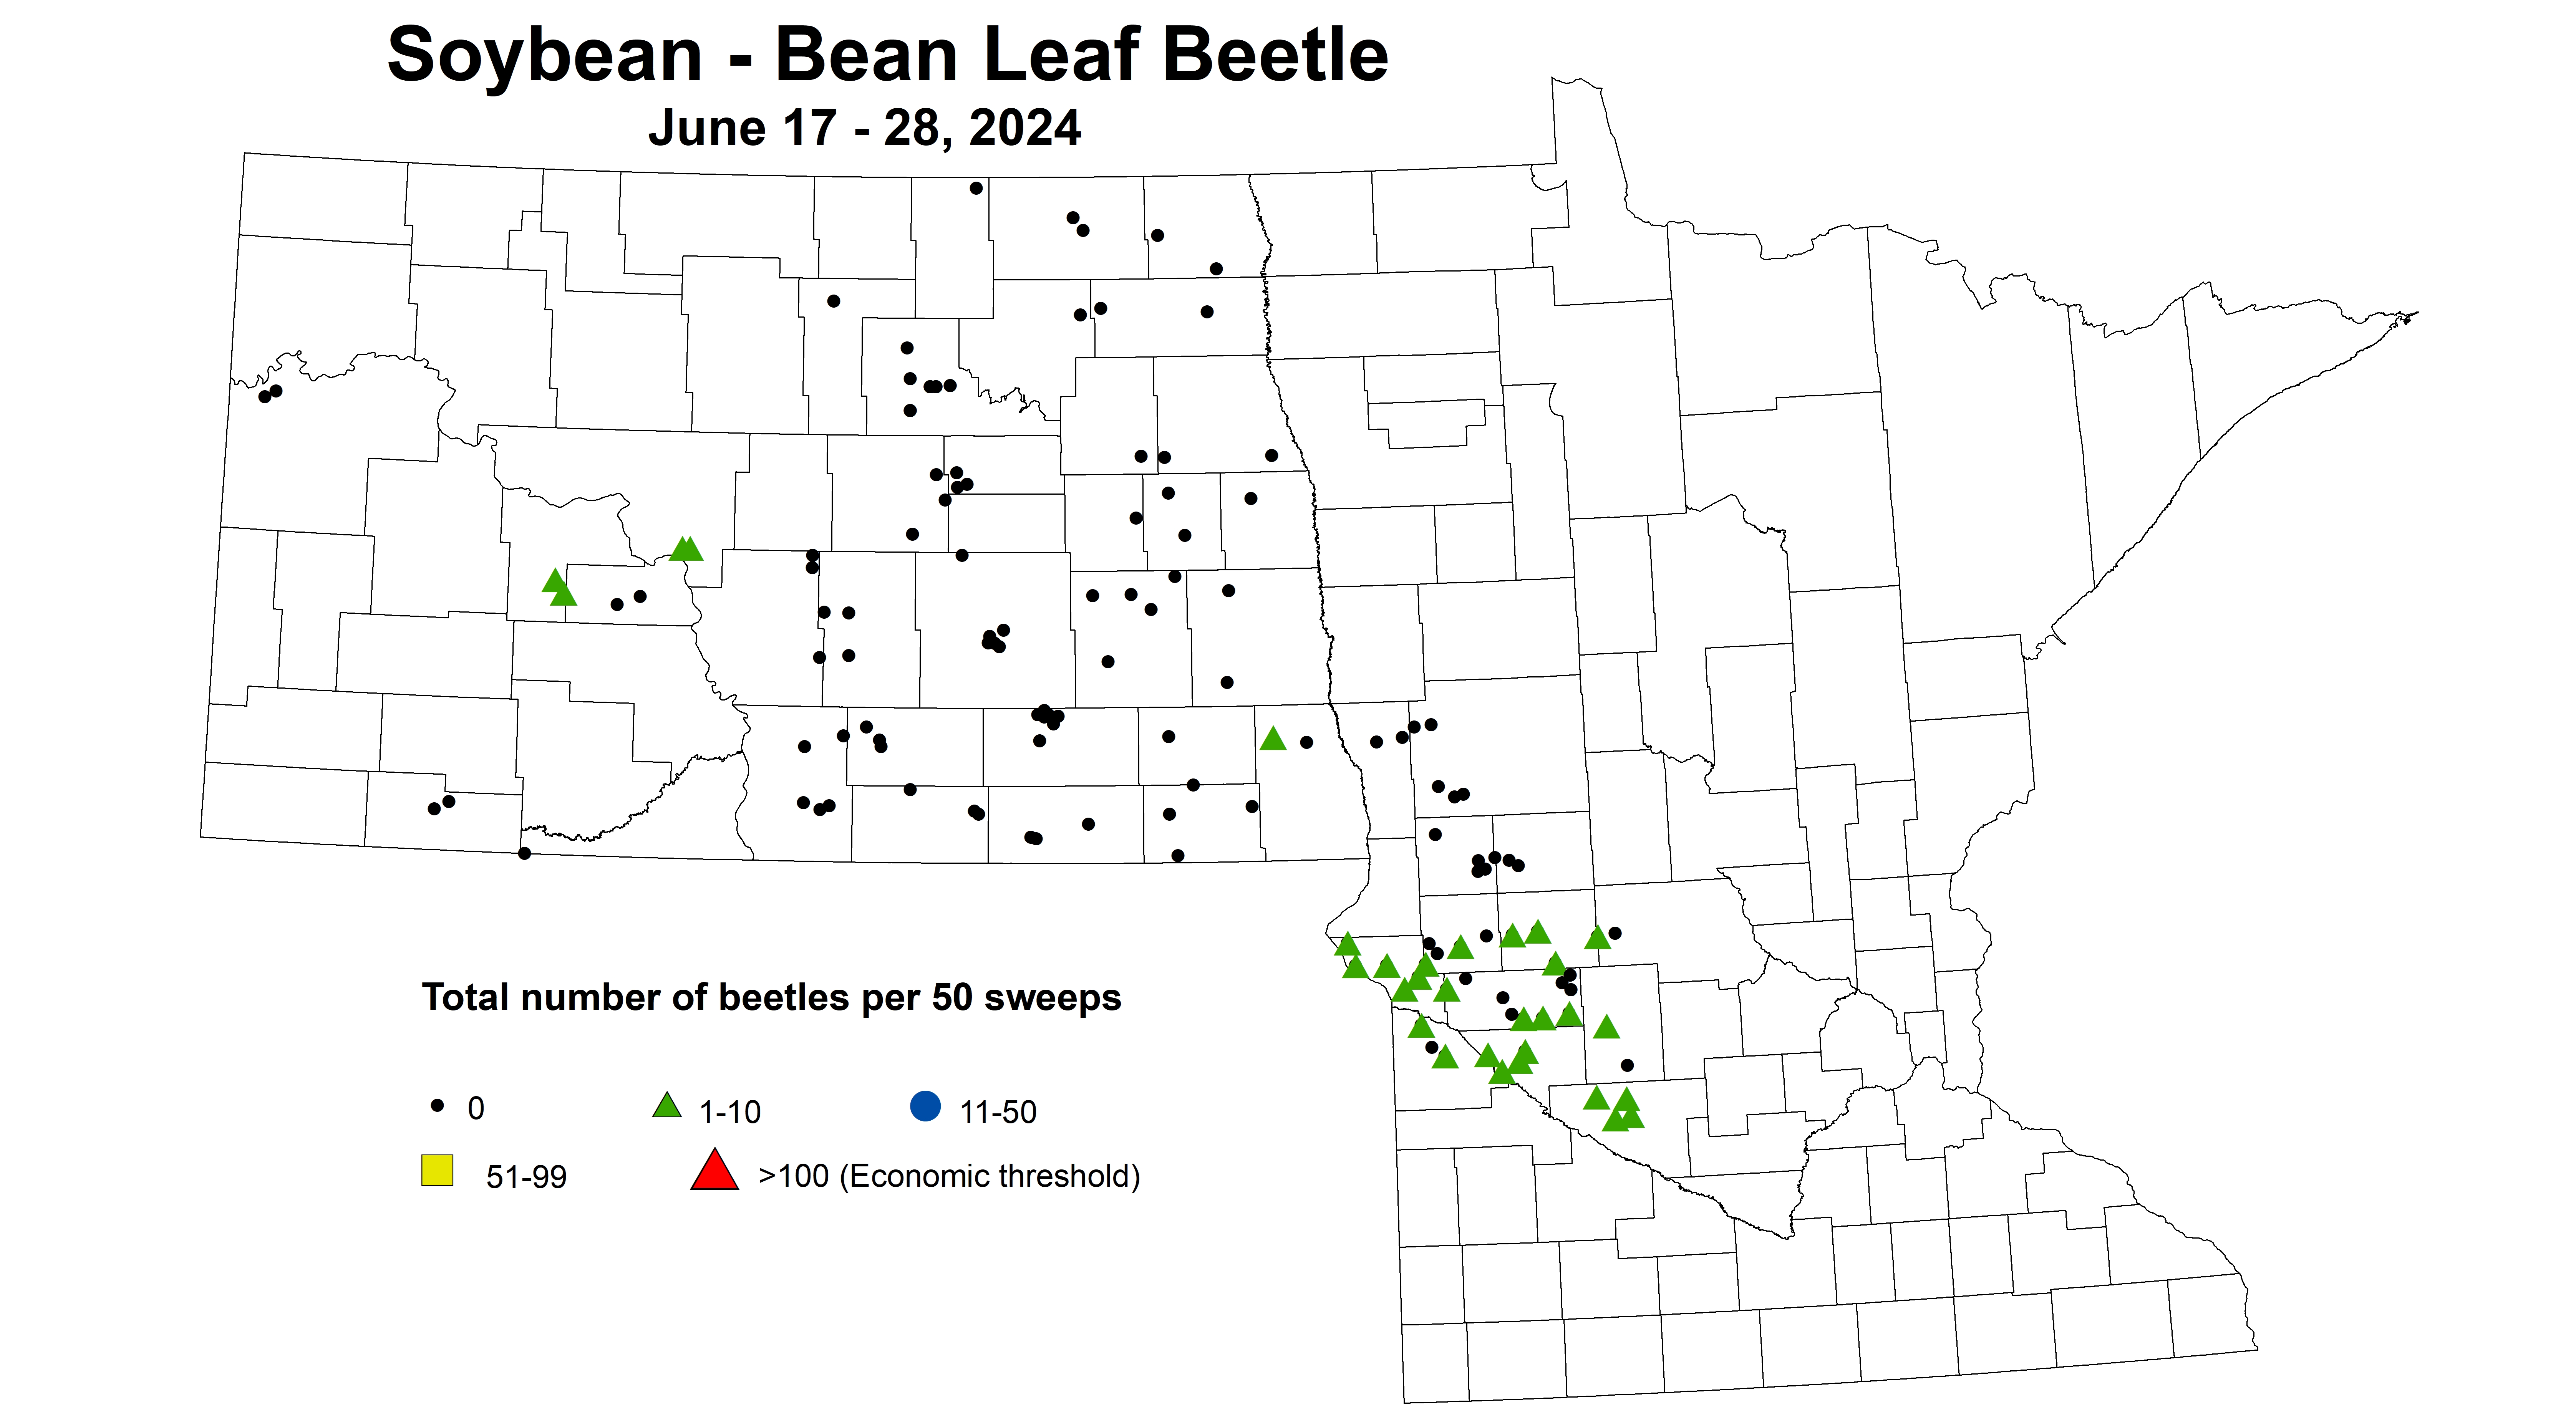 soybean BLB beetles per 50 sweeps June 17-28 2024